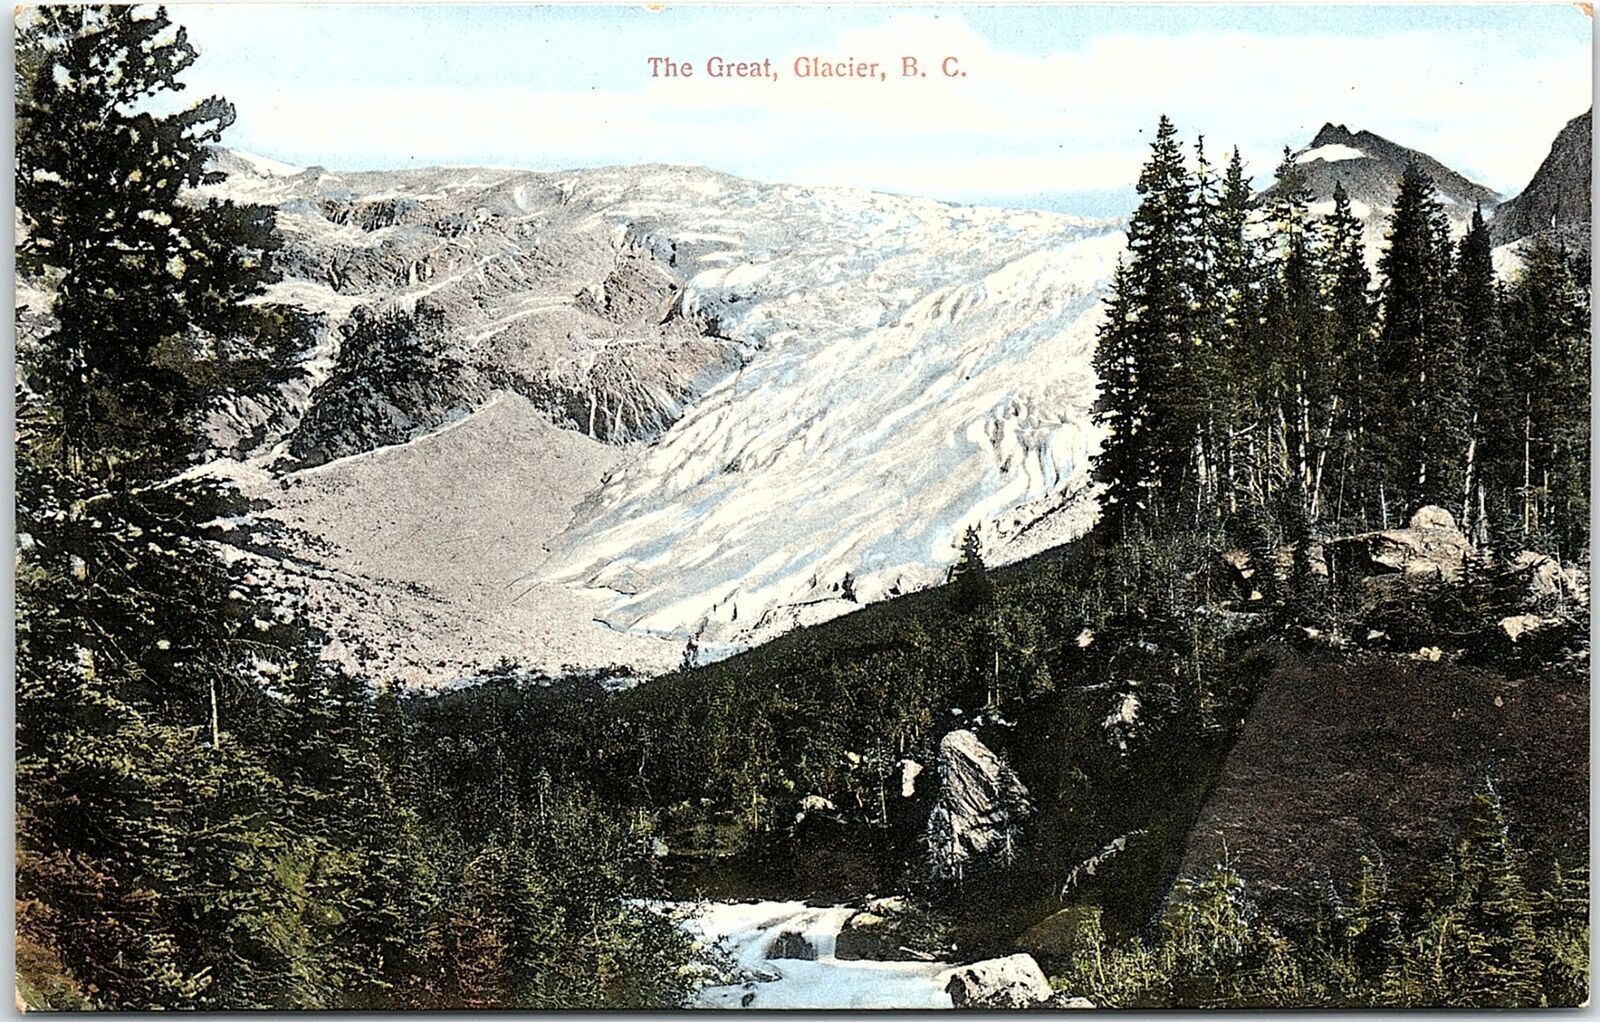 c1910 THE GREAT GLACIER BRITISH COLUMBIA CANADA SNOW SCENIC POSTCARD 43-21